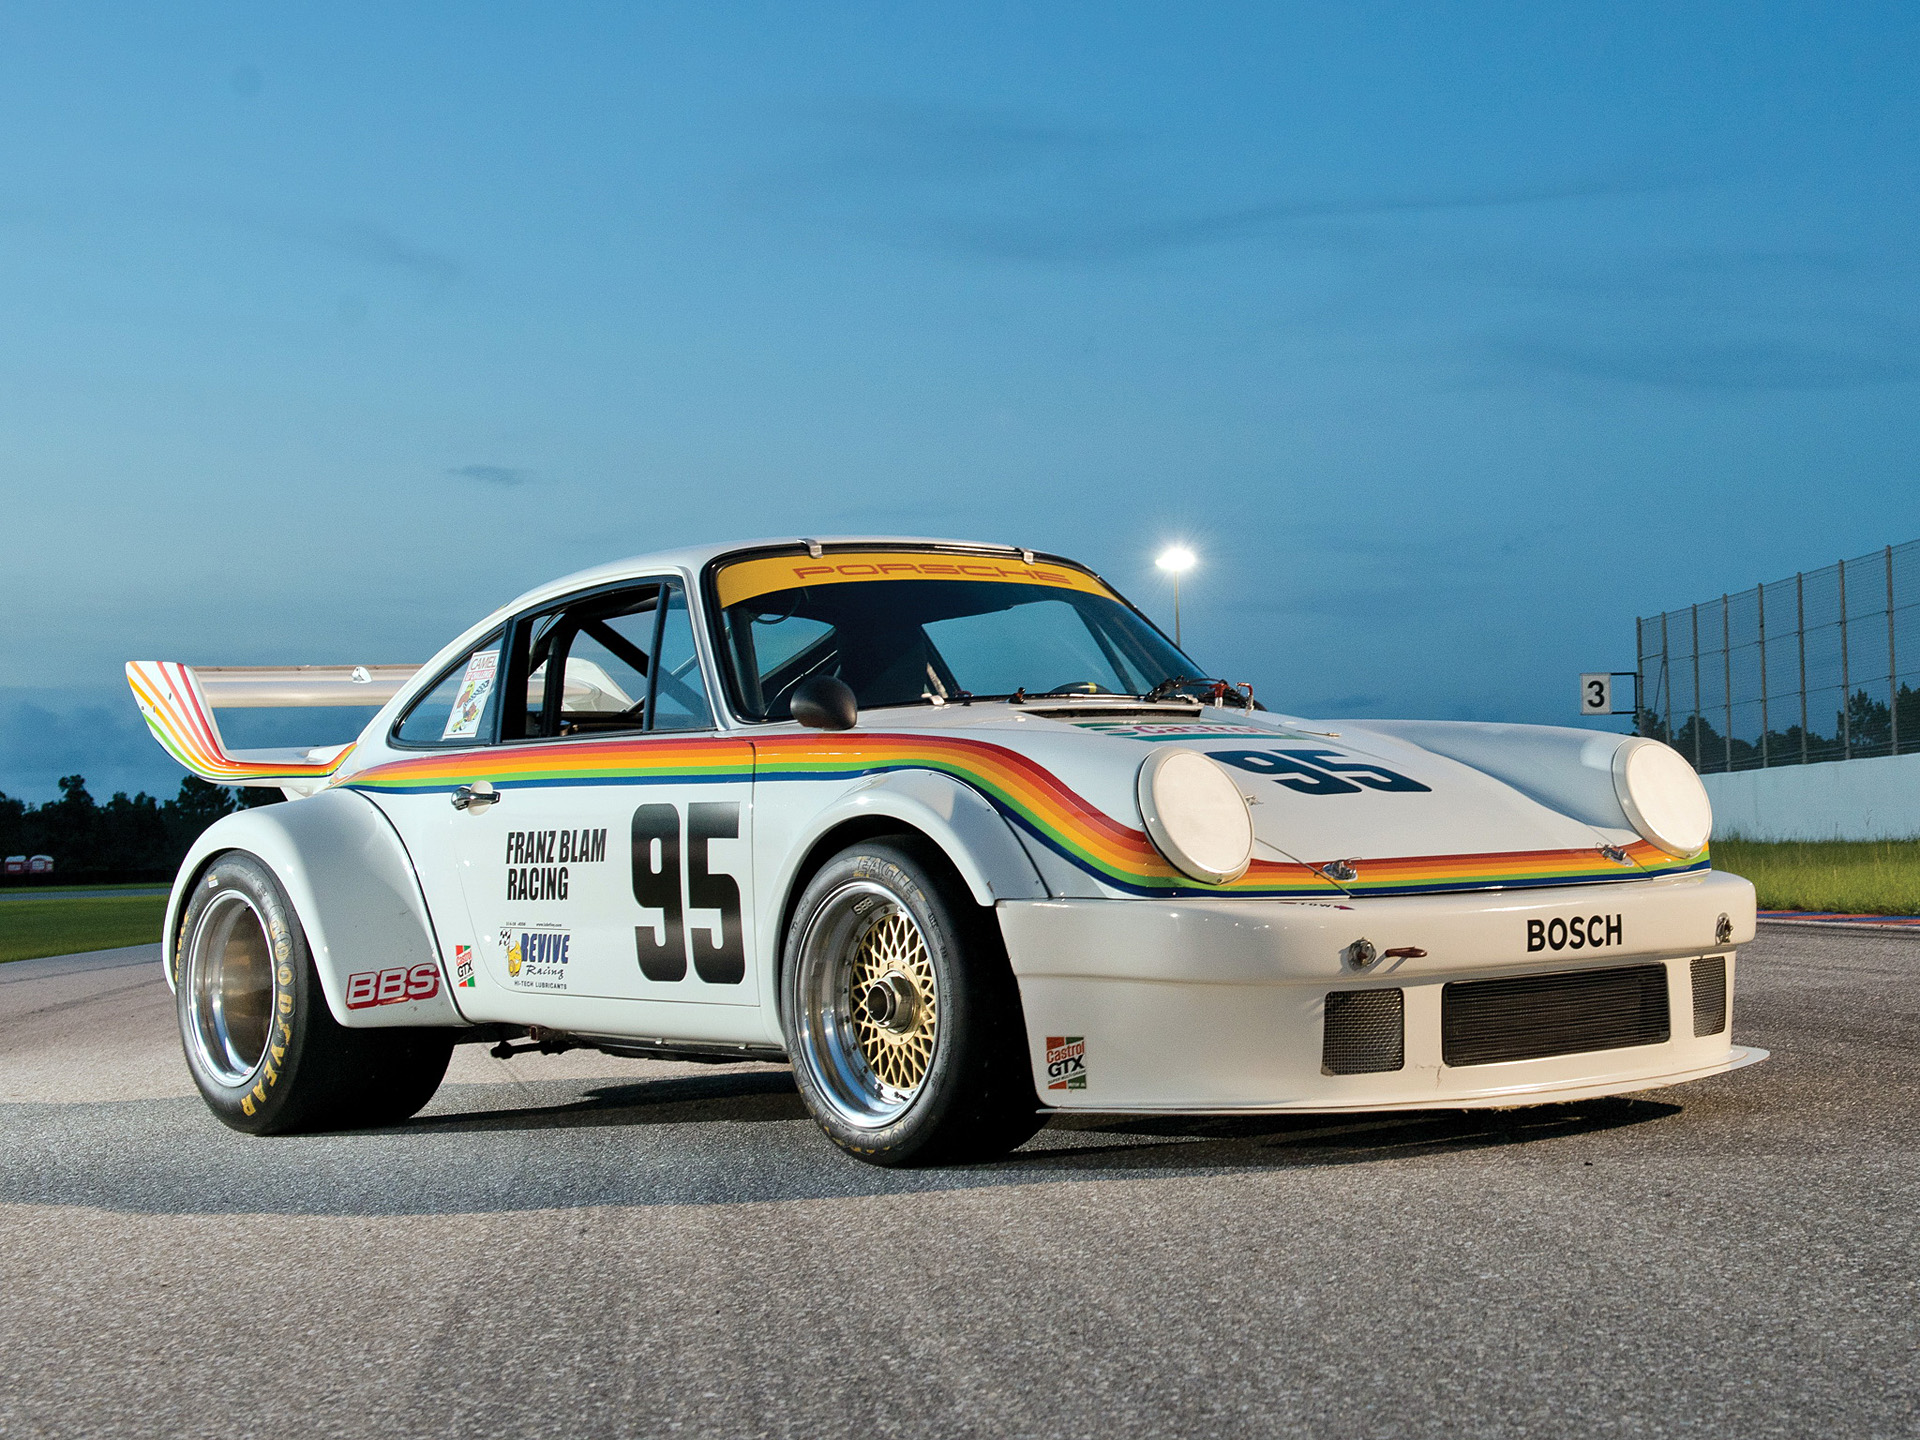 HQ Porsche 934 Turbo Rsr Background